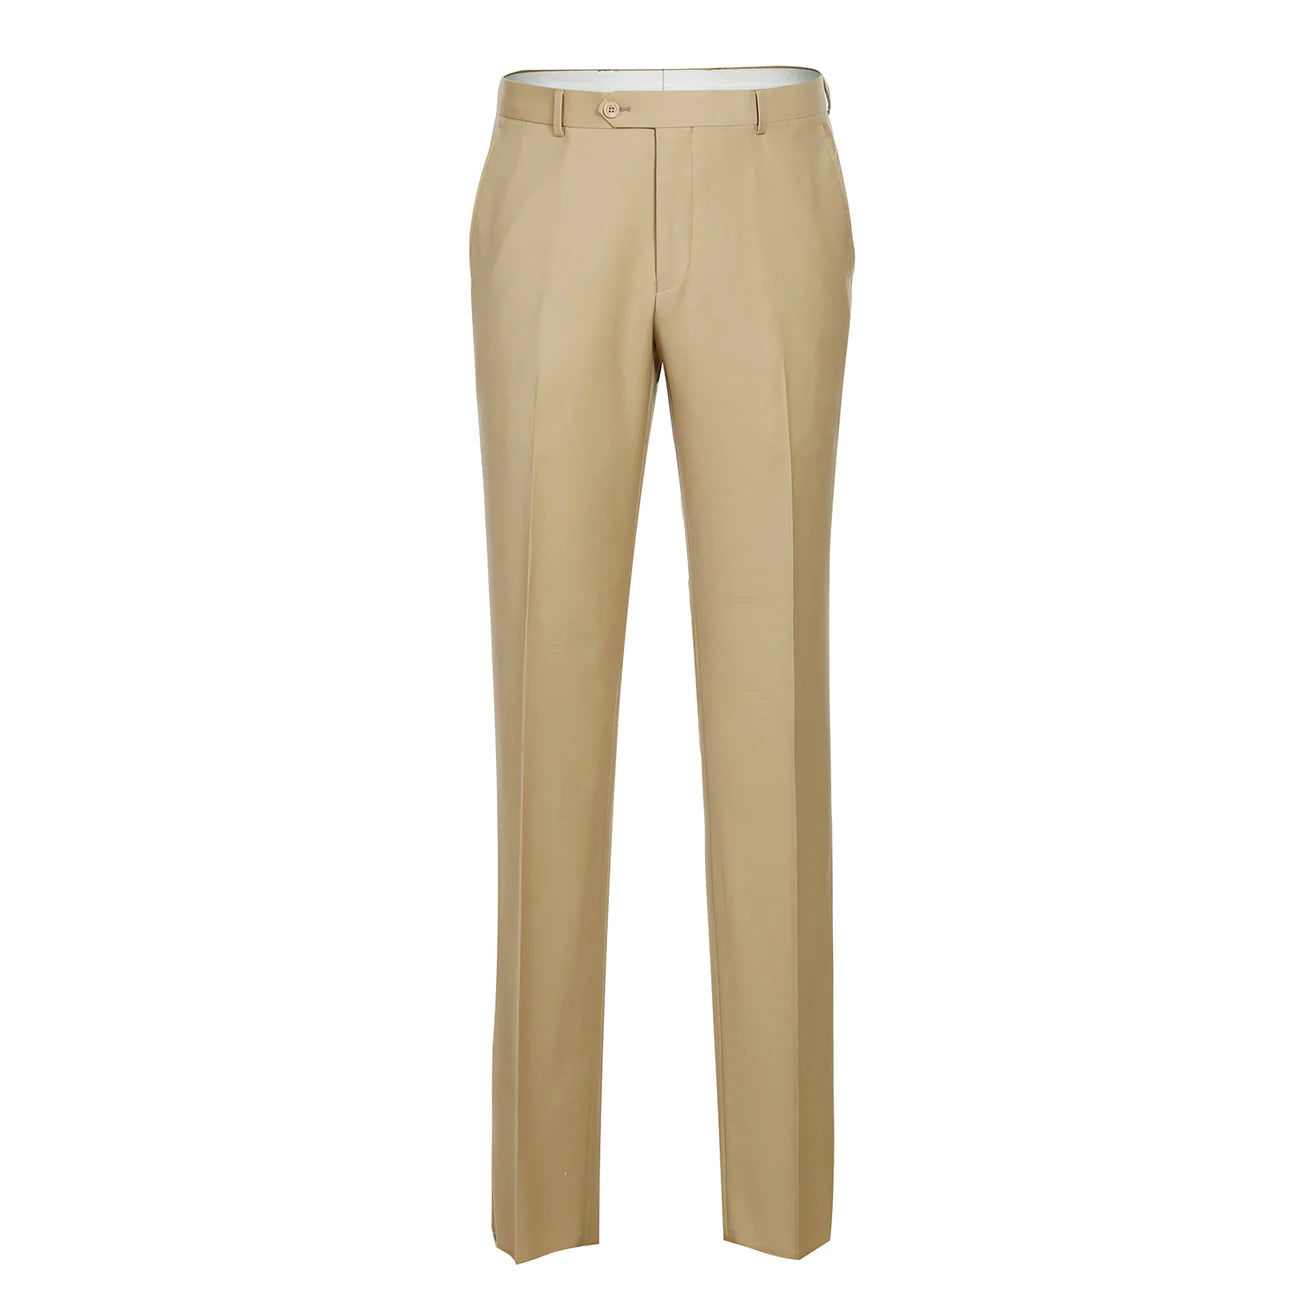 Renoir Tan Slim Fit Flat Front 100% Wool Suit Pant